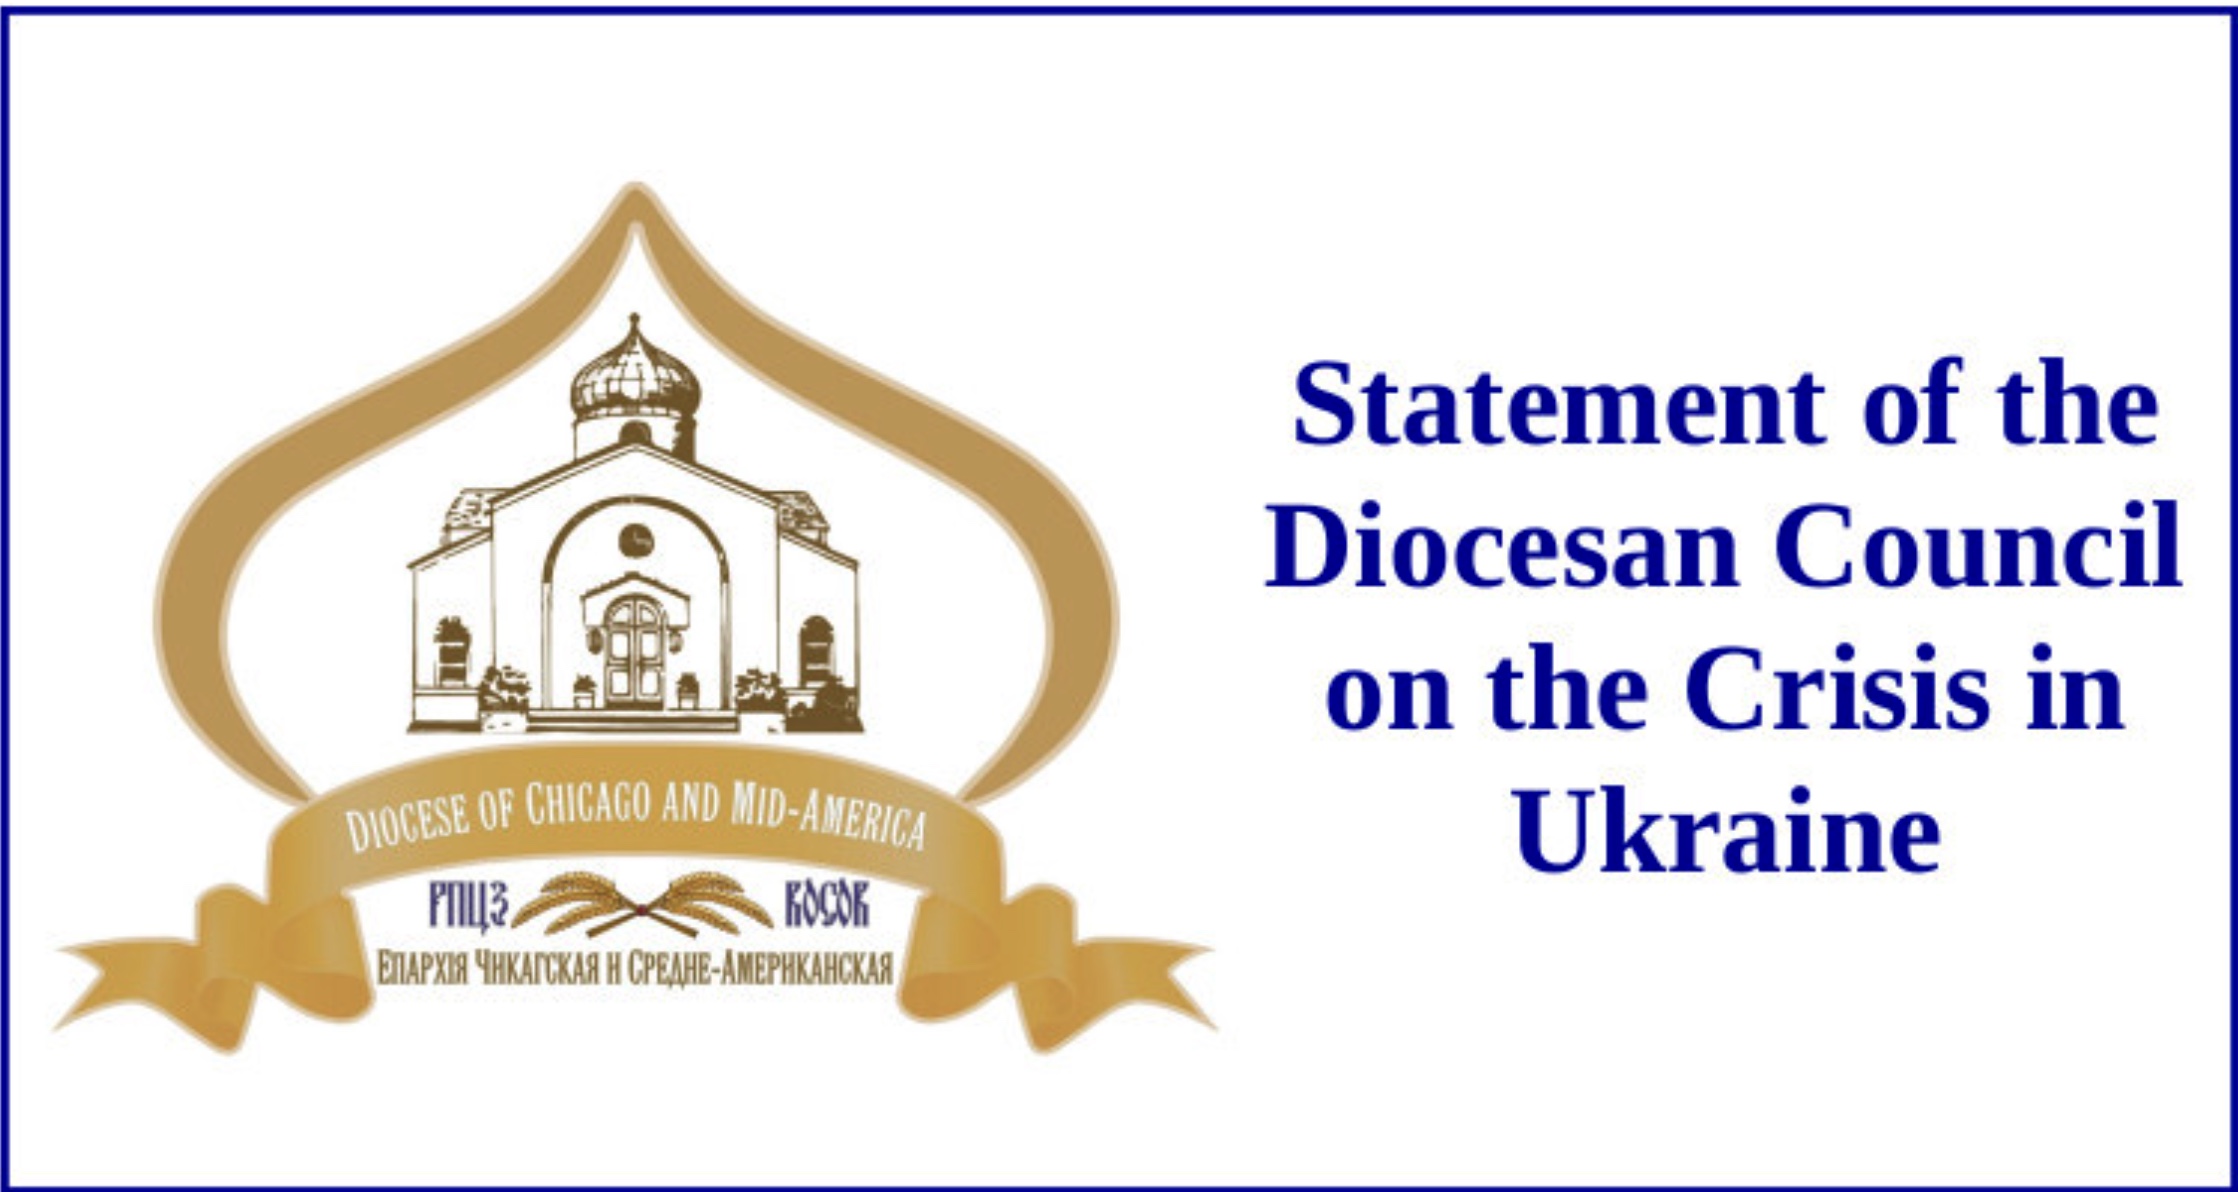 Déclaration du Conseil diocésain du Midwest de l’Église russe hors-frontières au sujet de l’Ukraine